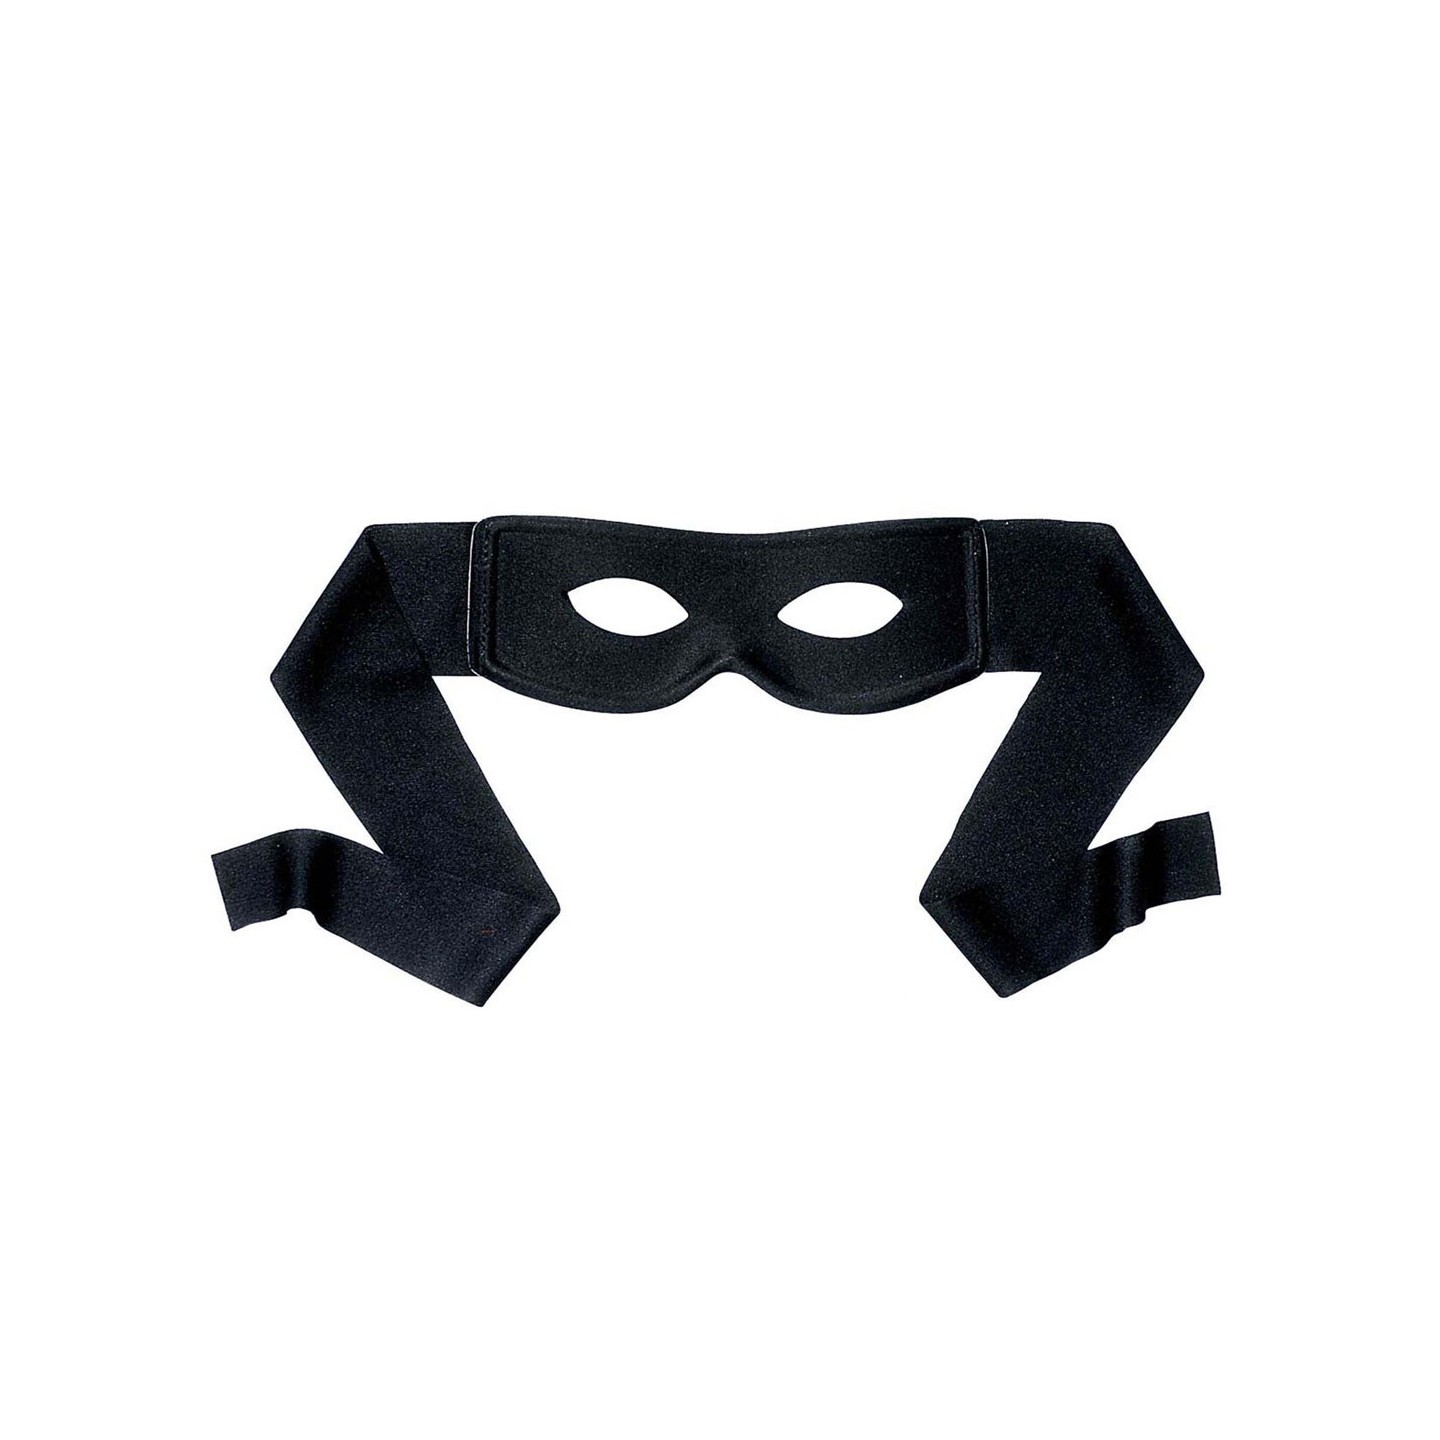 Vervullen Antagonisme Wetenschap Goedkoop Zorro masker kopen ? | Jokershop feestwinkel